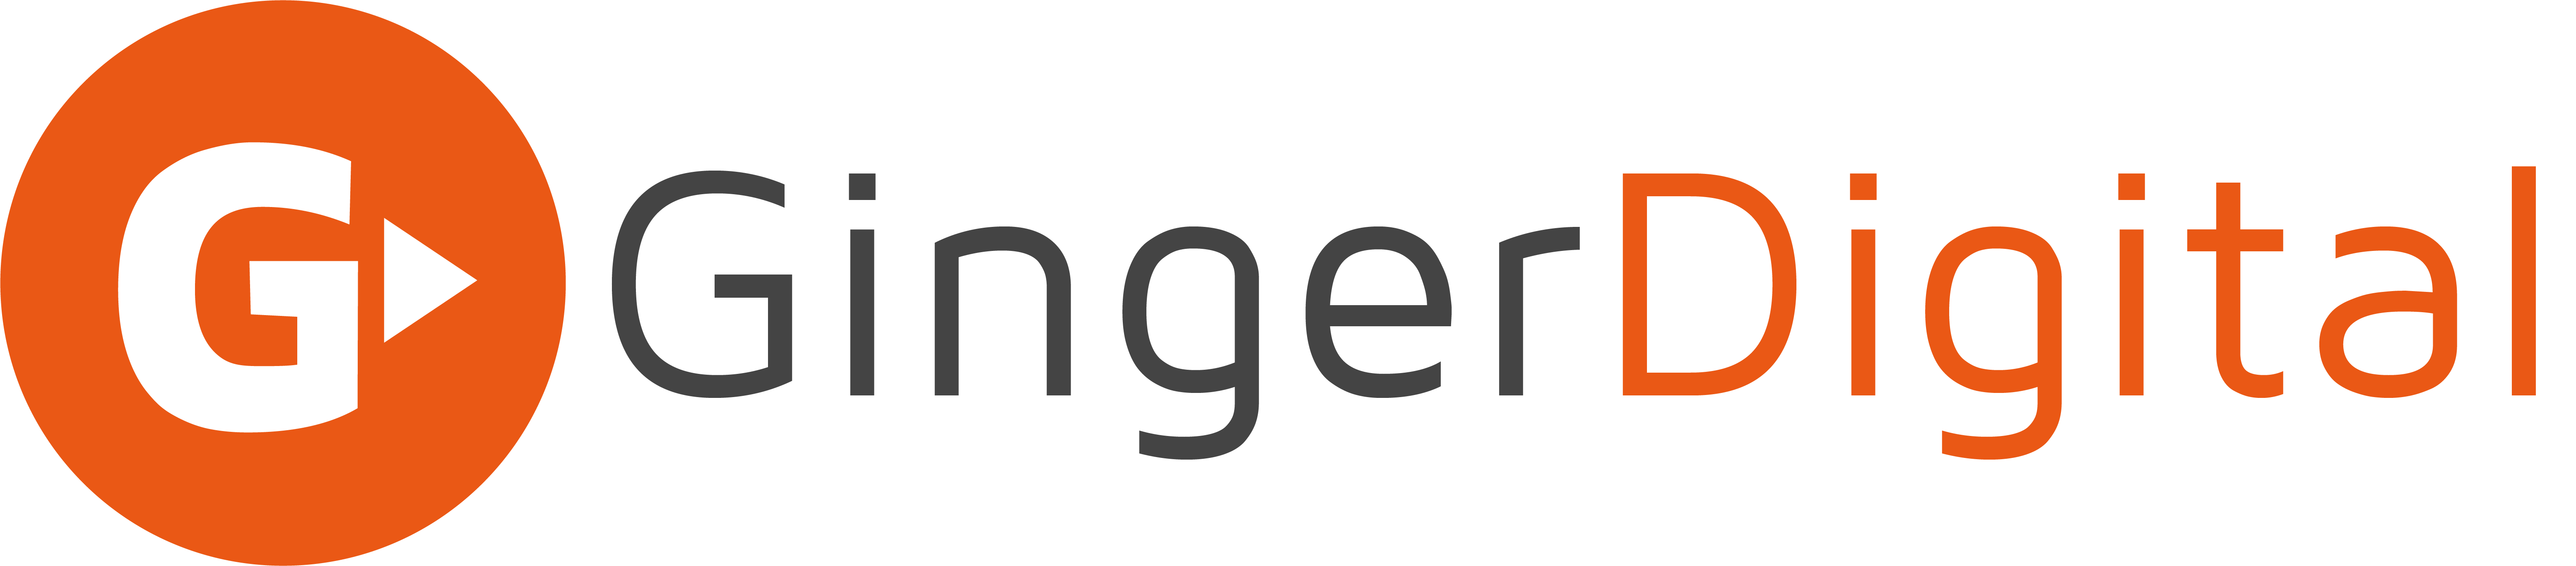 Ginger Digital Limited